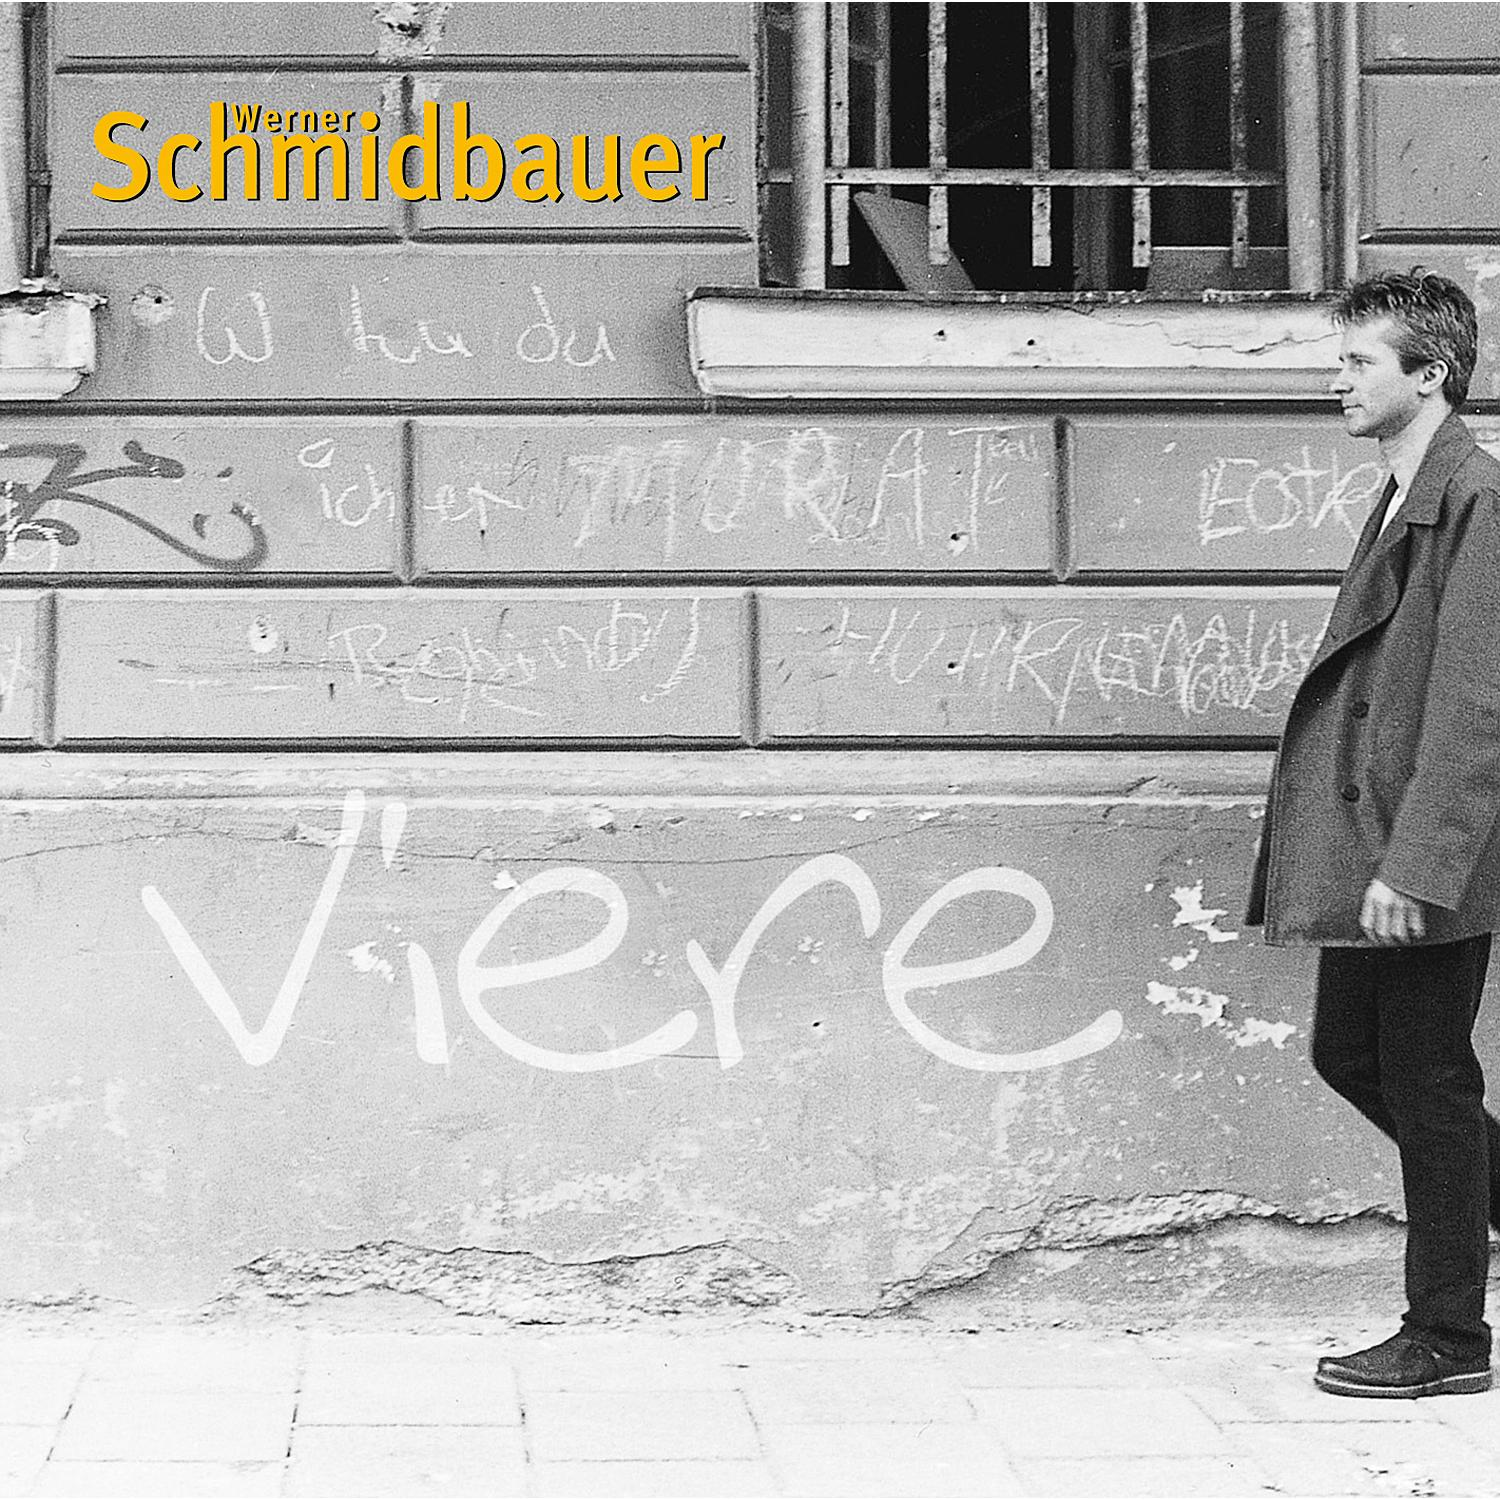 Schmidbauer, Schmidbauer - Kälberer & Viere (CD) 